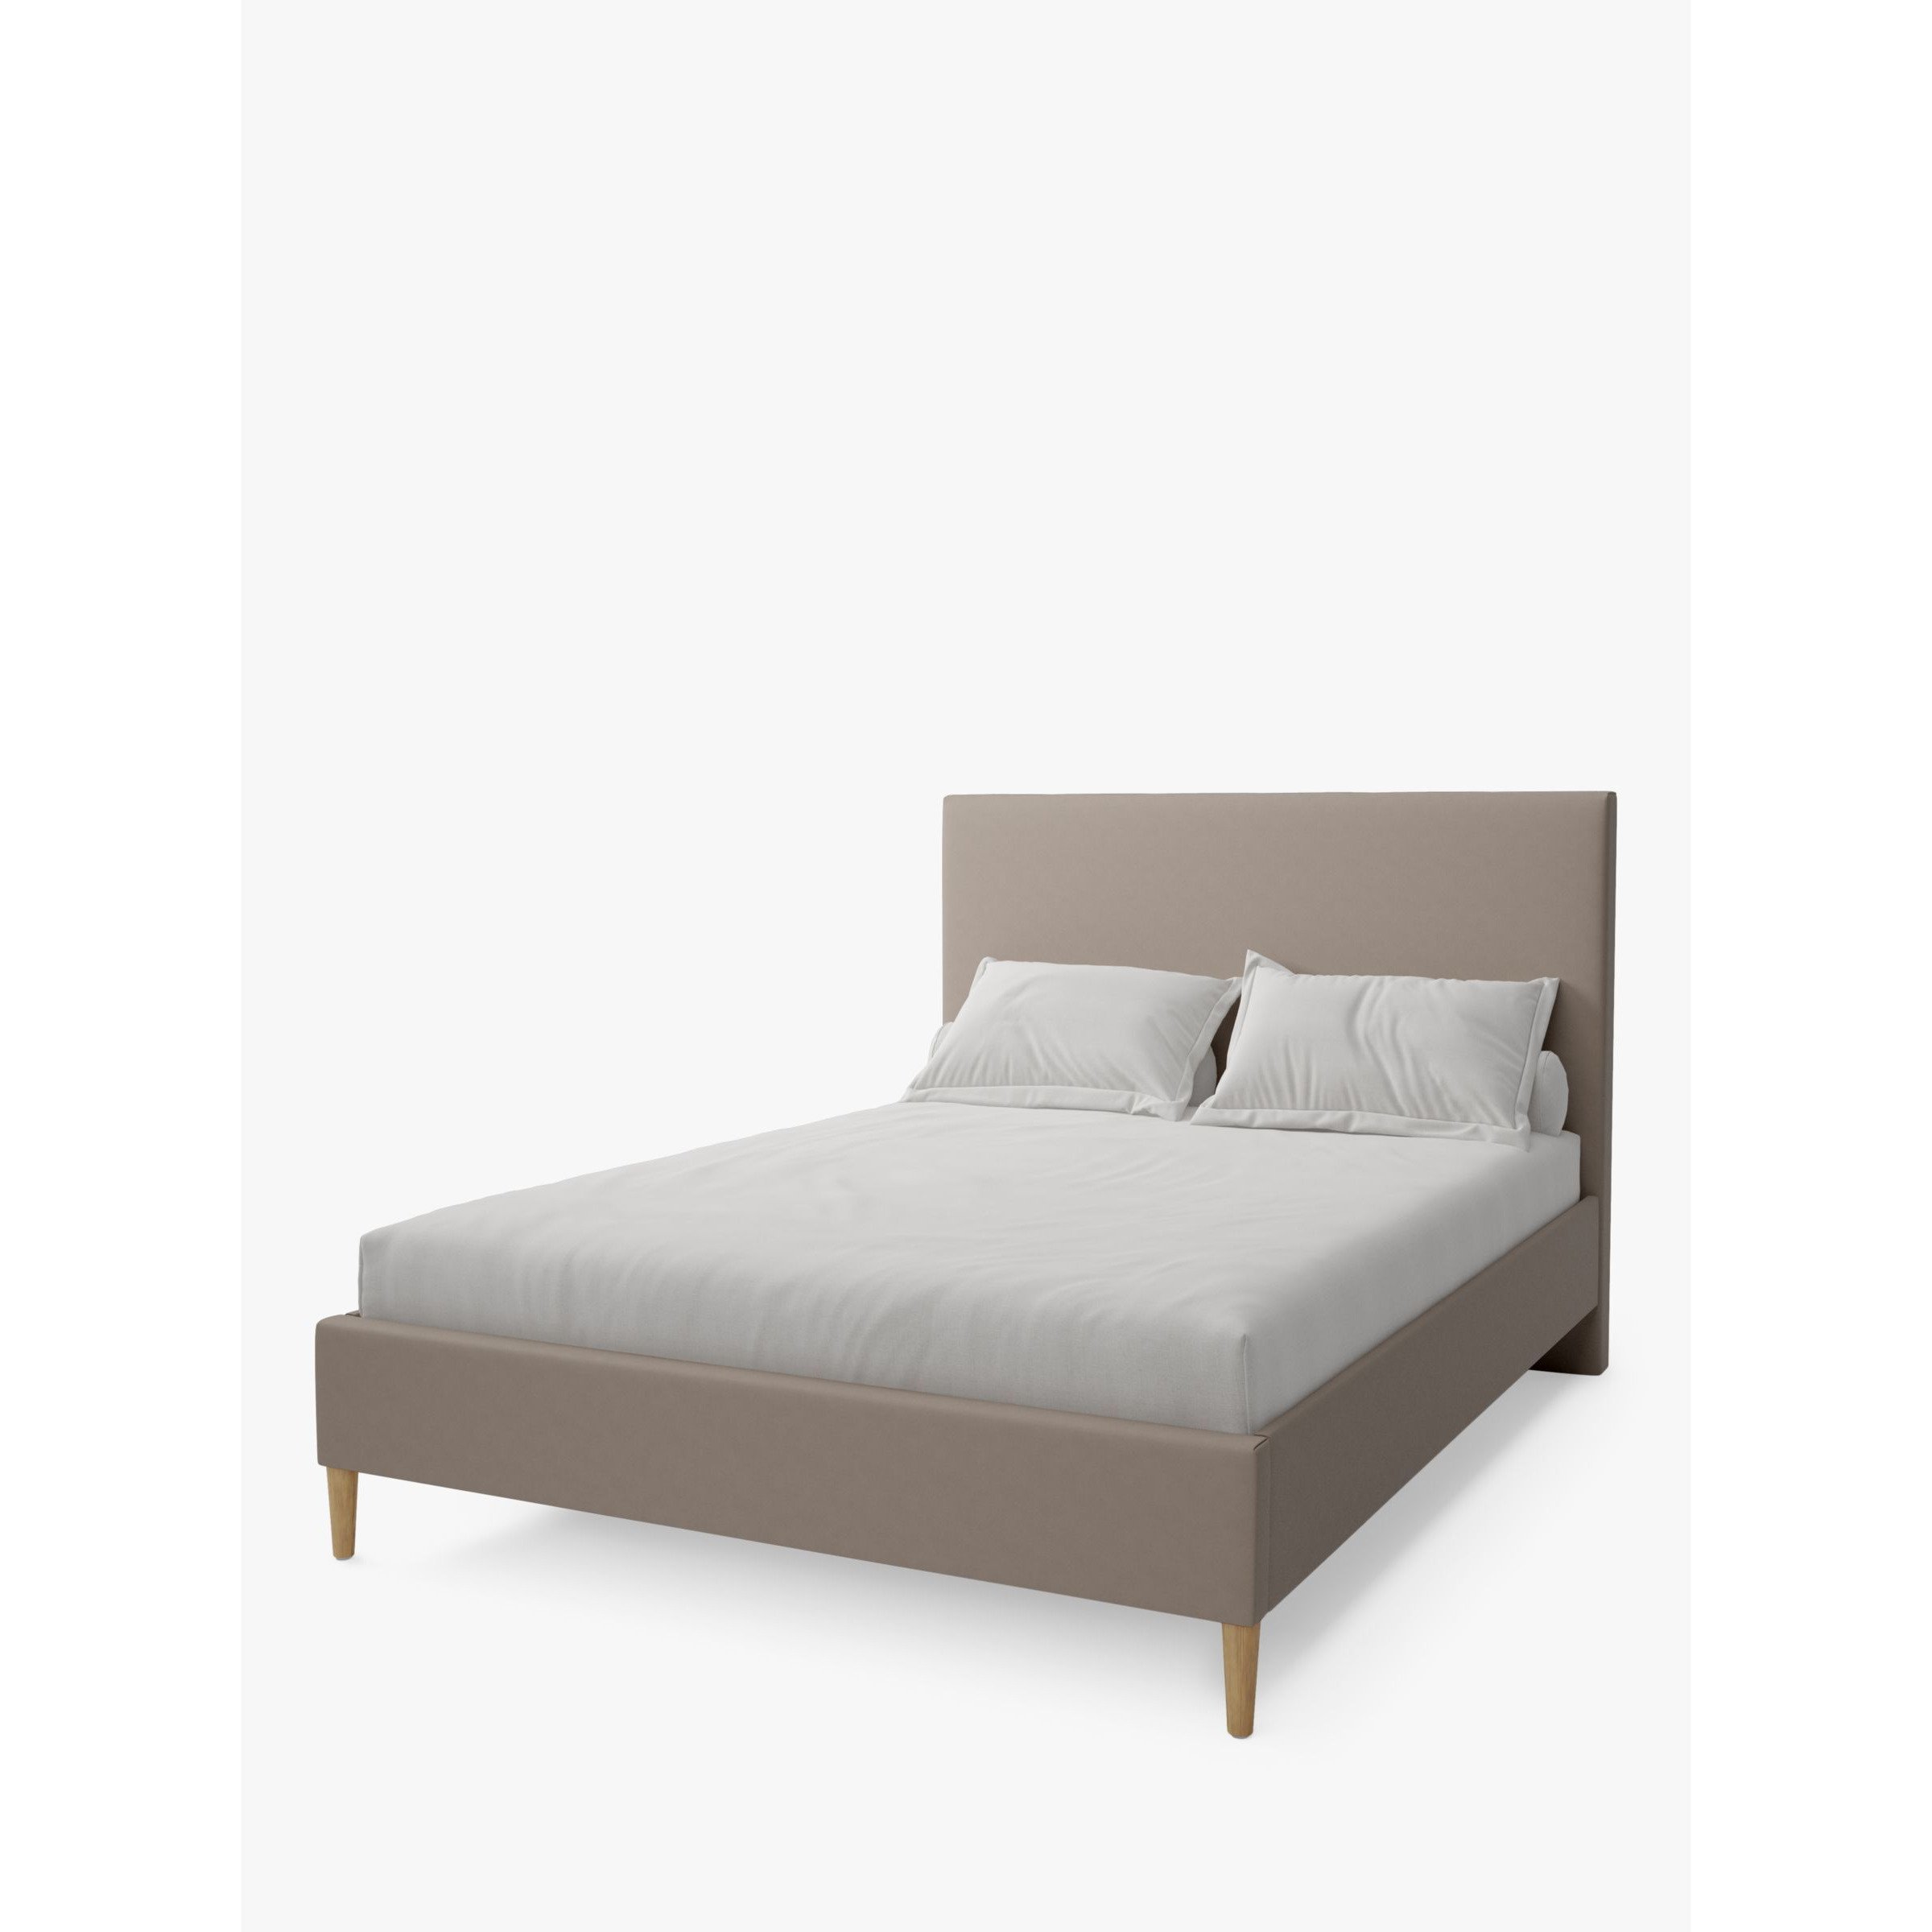 Koti Home Dee Upholstered Bed Frame, Super King Size - image 1